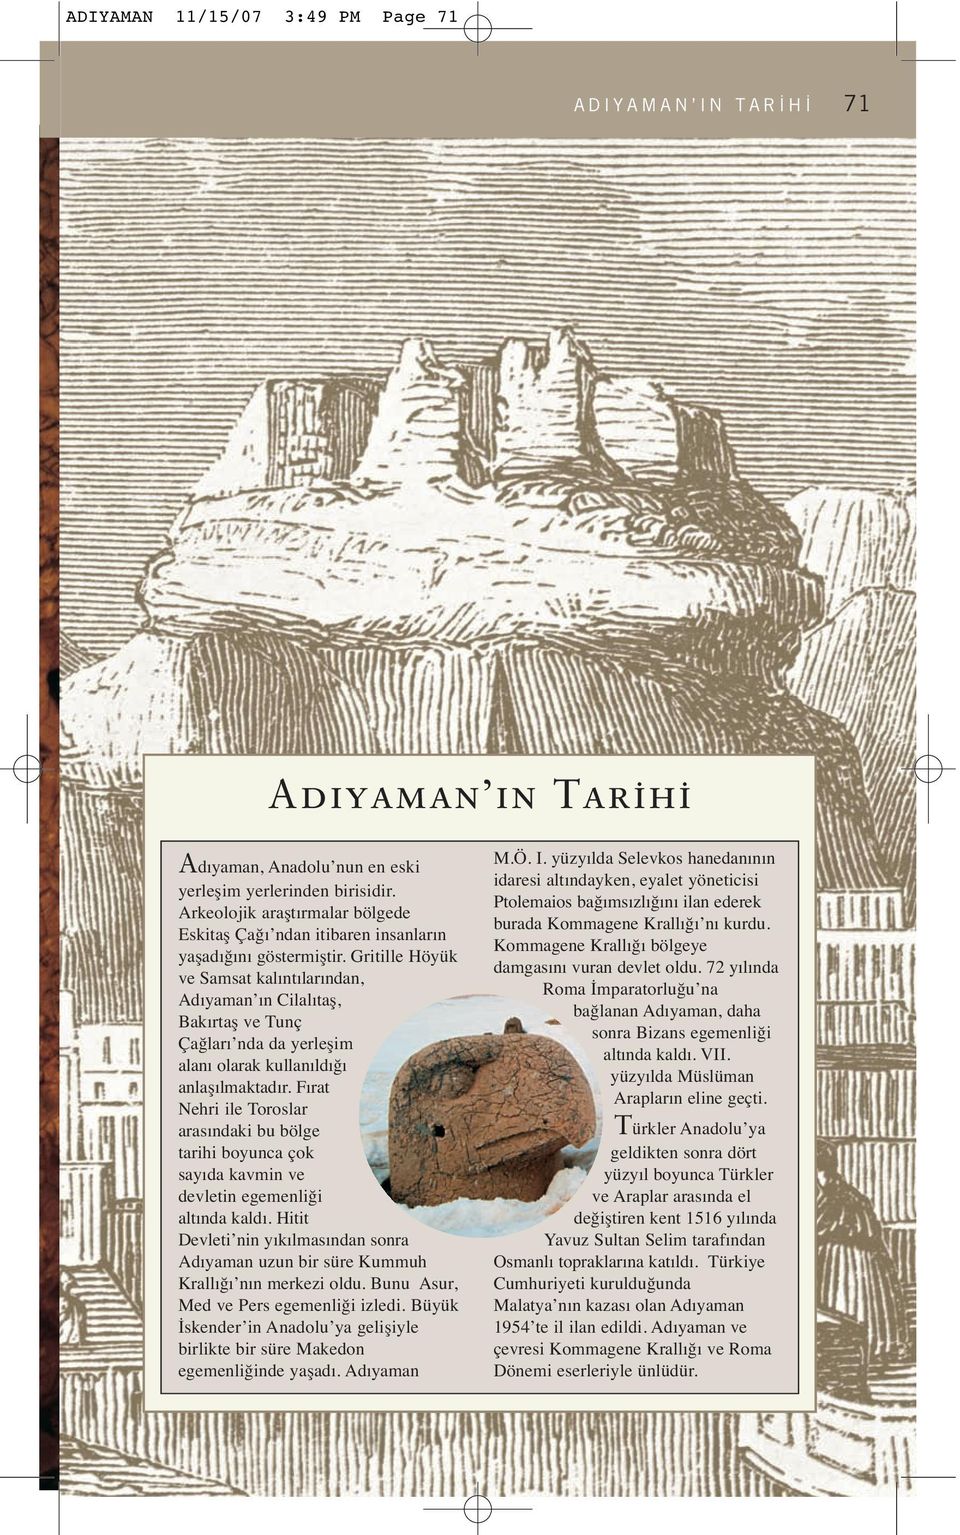 Gritille Höyük ve Samsat kalıntılarından, Adıyaman ın Cilalıtaş, Bakırtaş ve Tunç Çağları nda da yerleşim alanı olarak kullanıldığı anlaşılmaktadır.